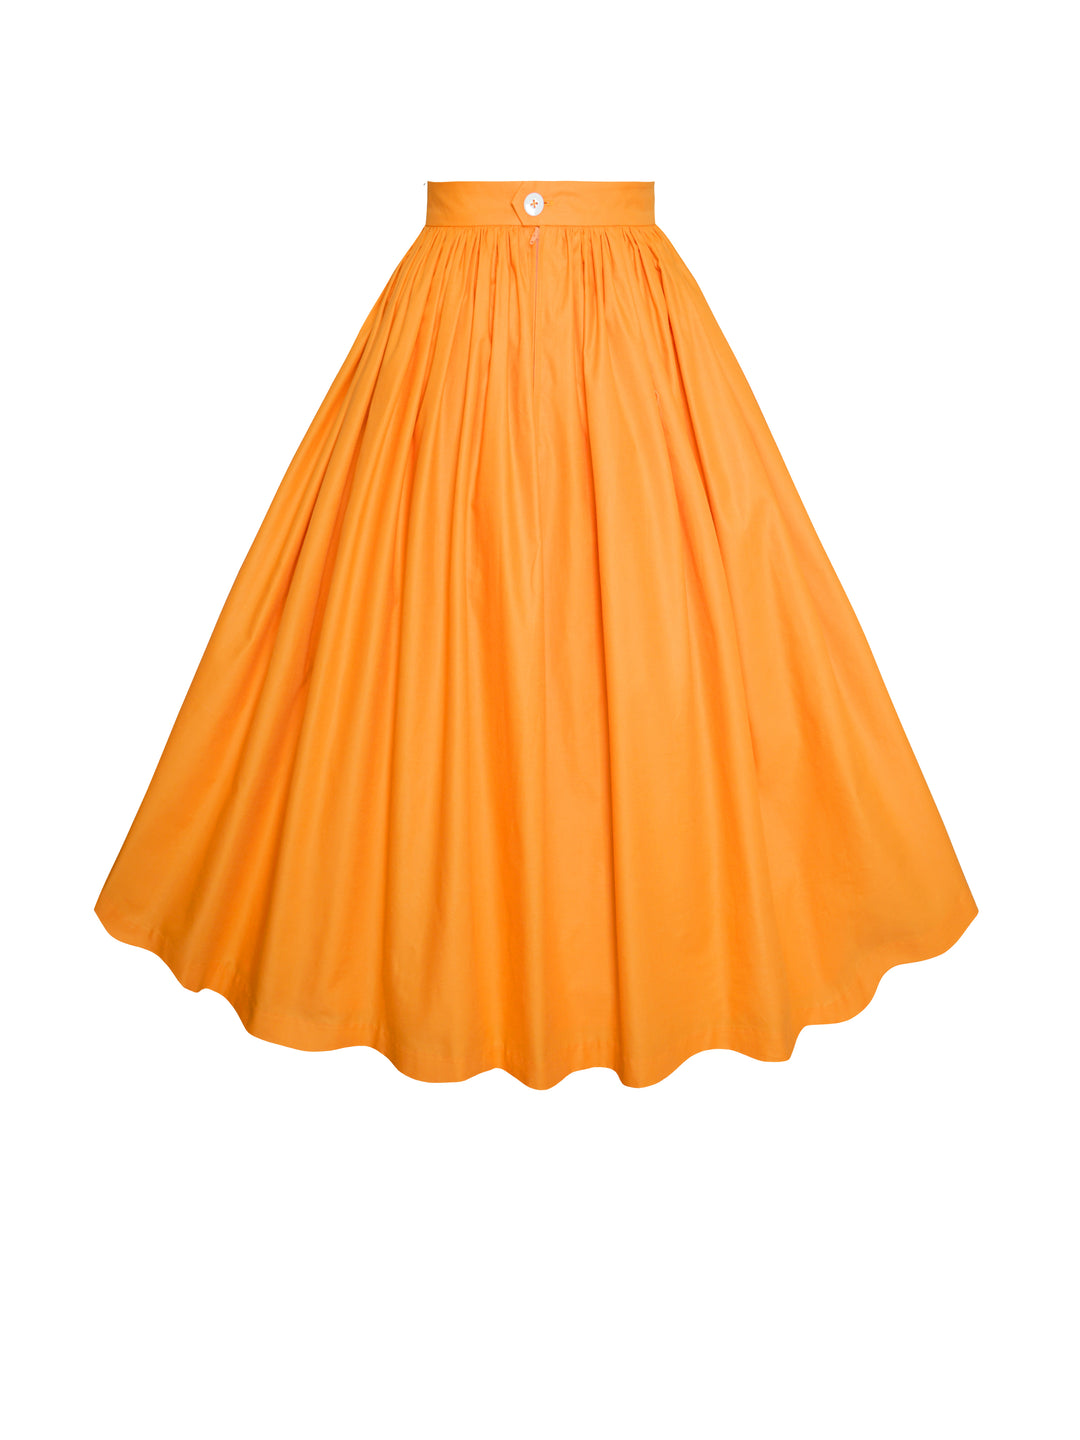 MTO - Lola Skirt Pumpkin Orange Cotton